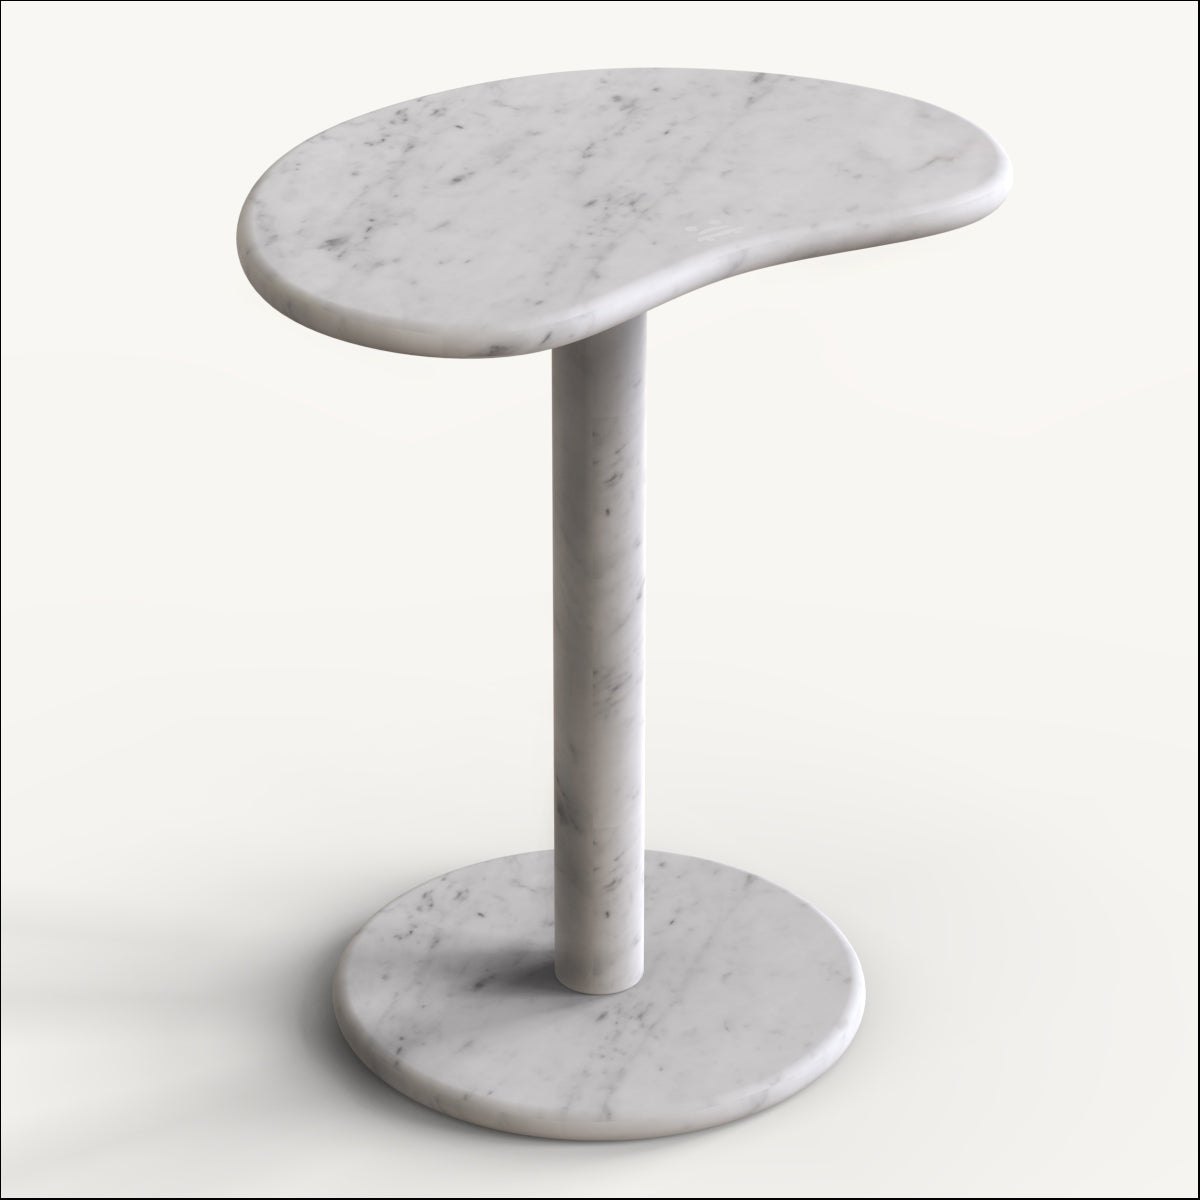 OIXDESIGN PeaPod Medium Side Table, Italian Carrara Marble, Micro Scene Graph, Side View